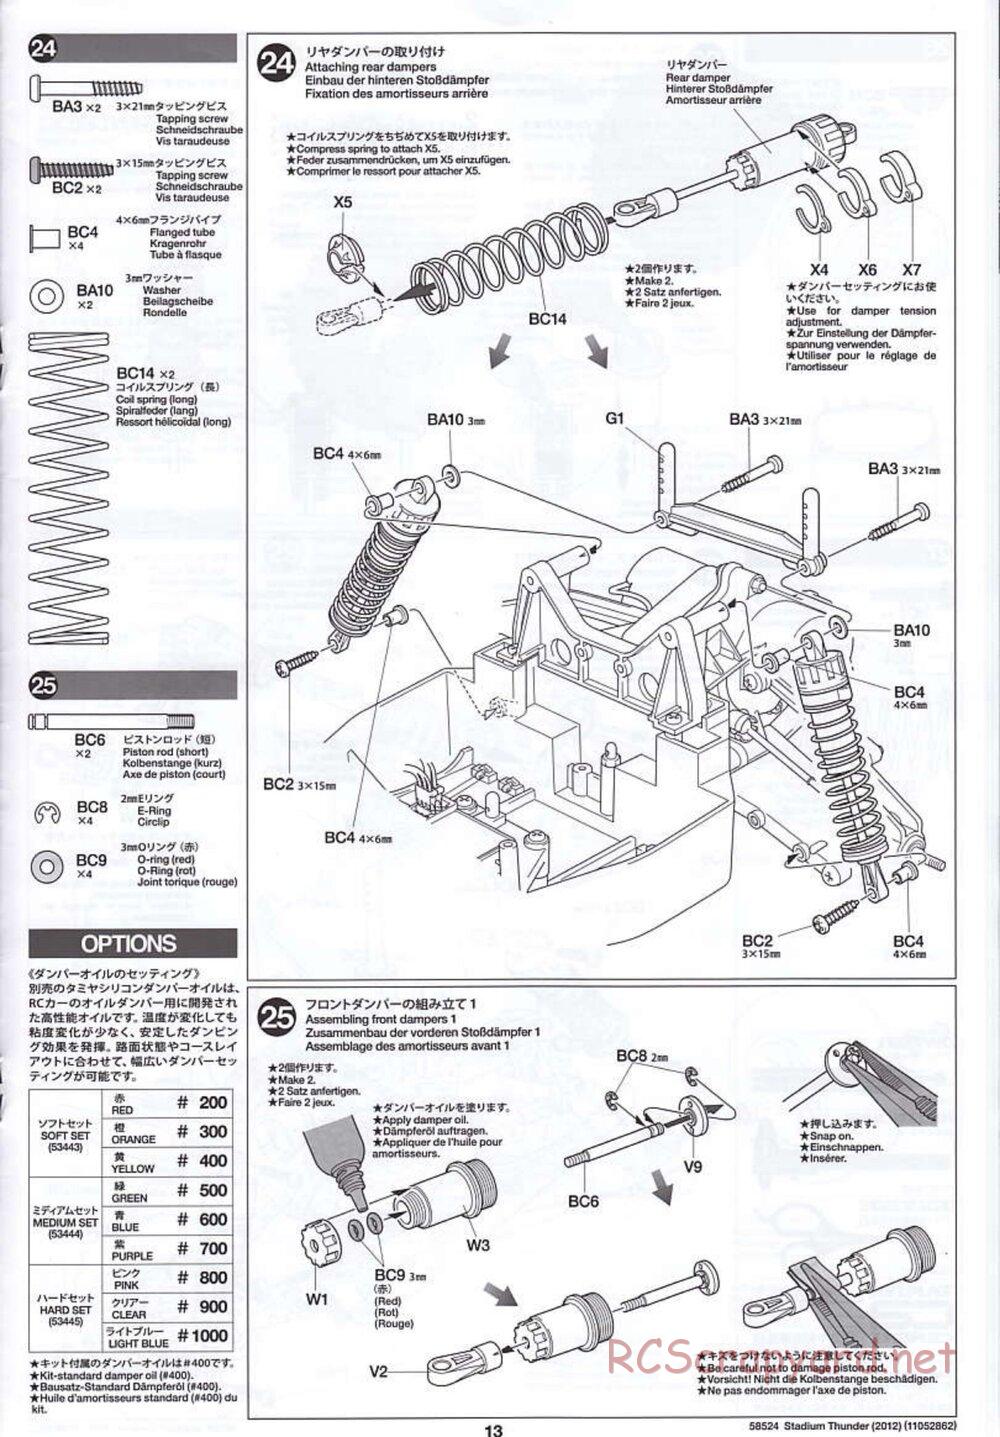 Tamiya - Stadium Thunder 2012 - FAL Chassis - Manual - Page 13